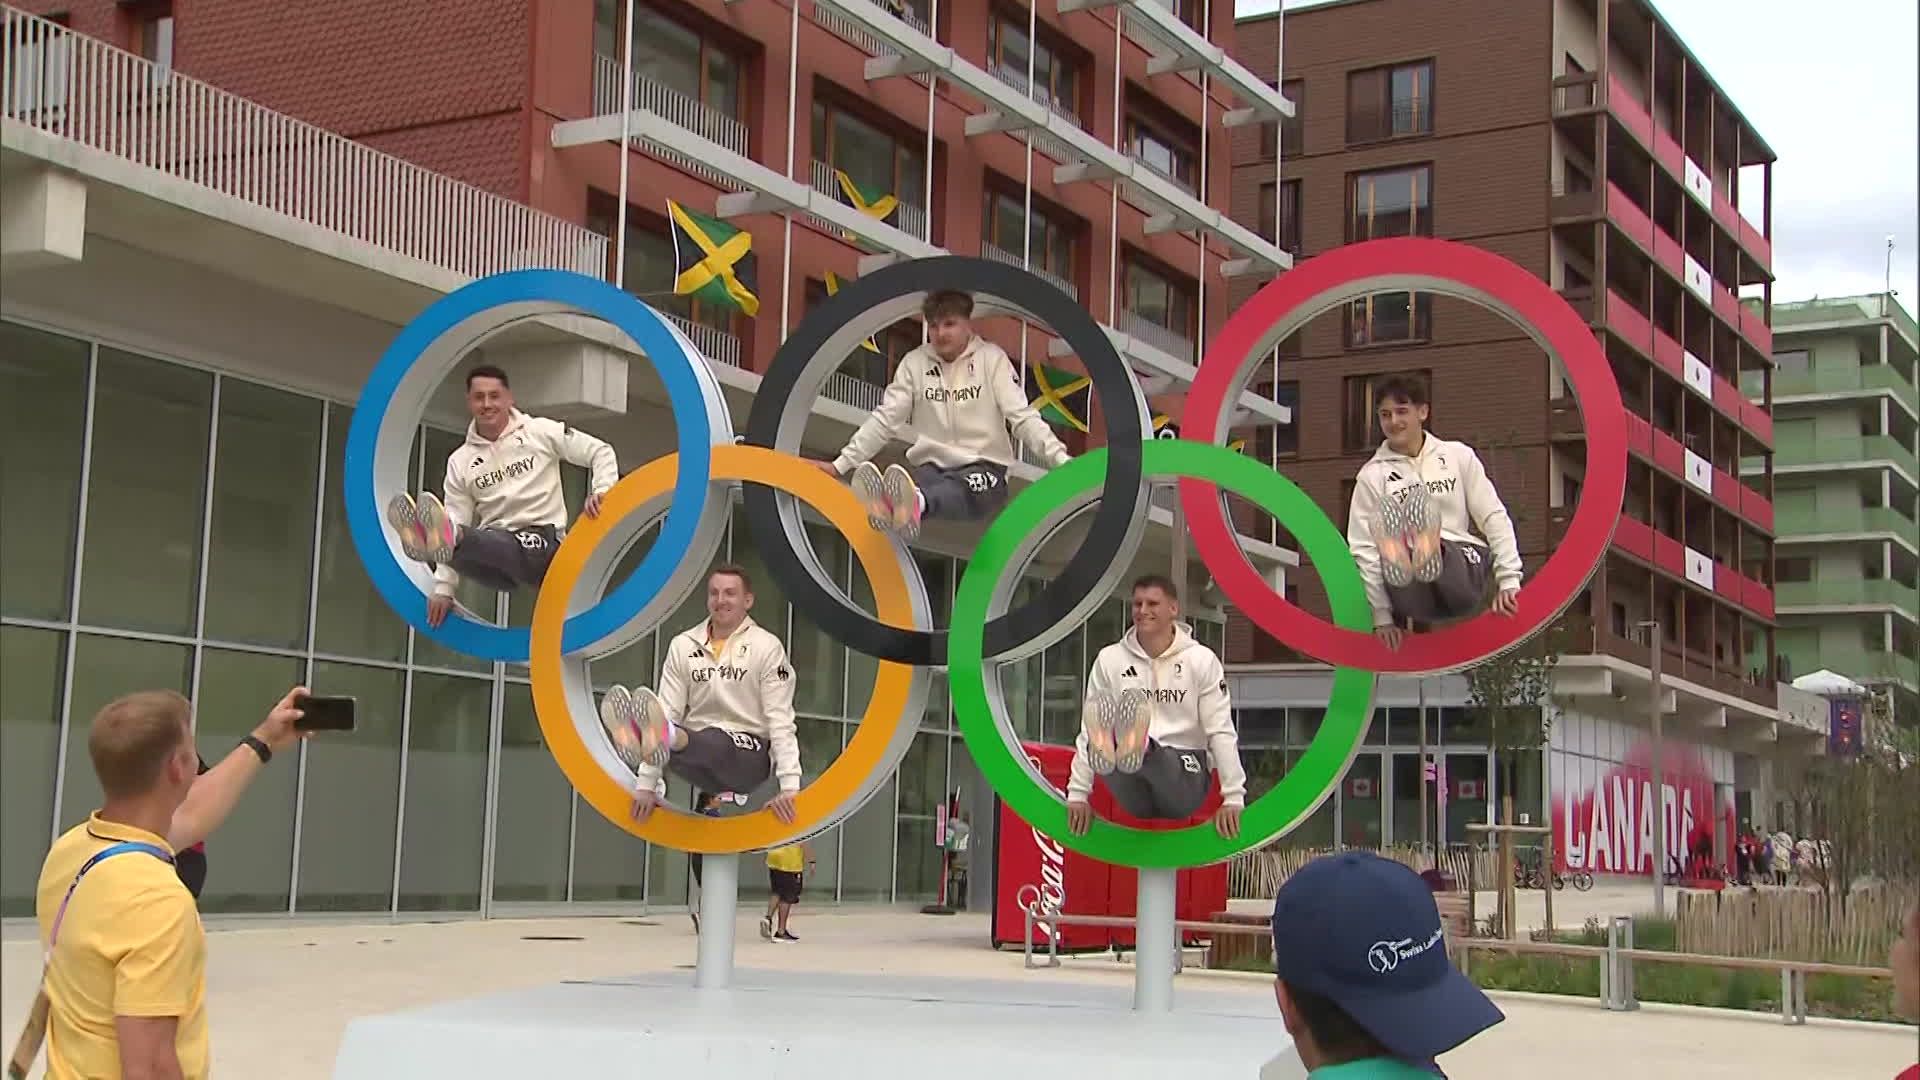 독일 체조 선수들이 올림픽 선수촌에 전시된 오륜기 앞에서 기념 사진을 찍고 있다. 체조 선수다운 자세다.